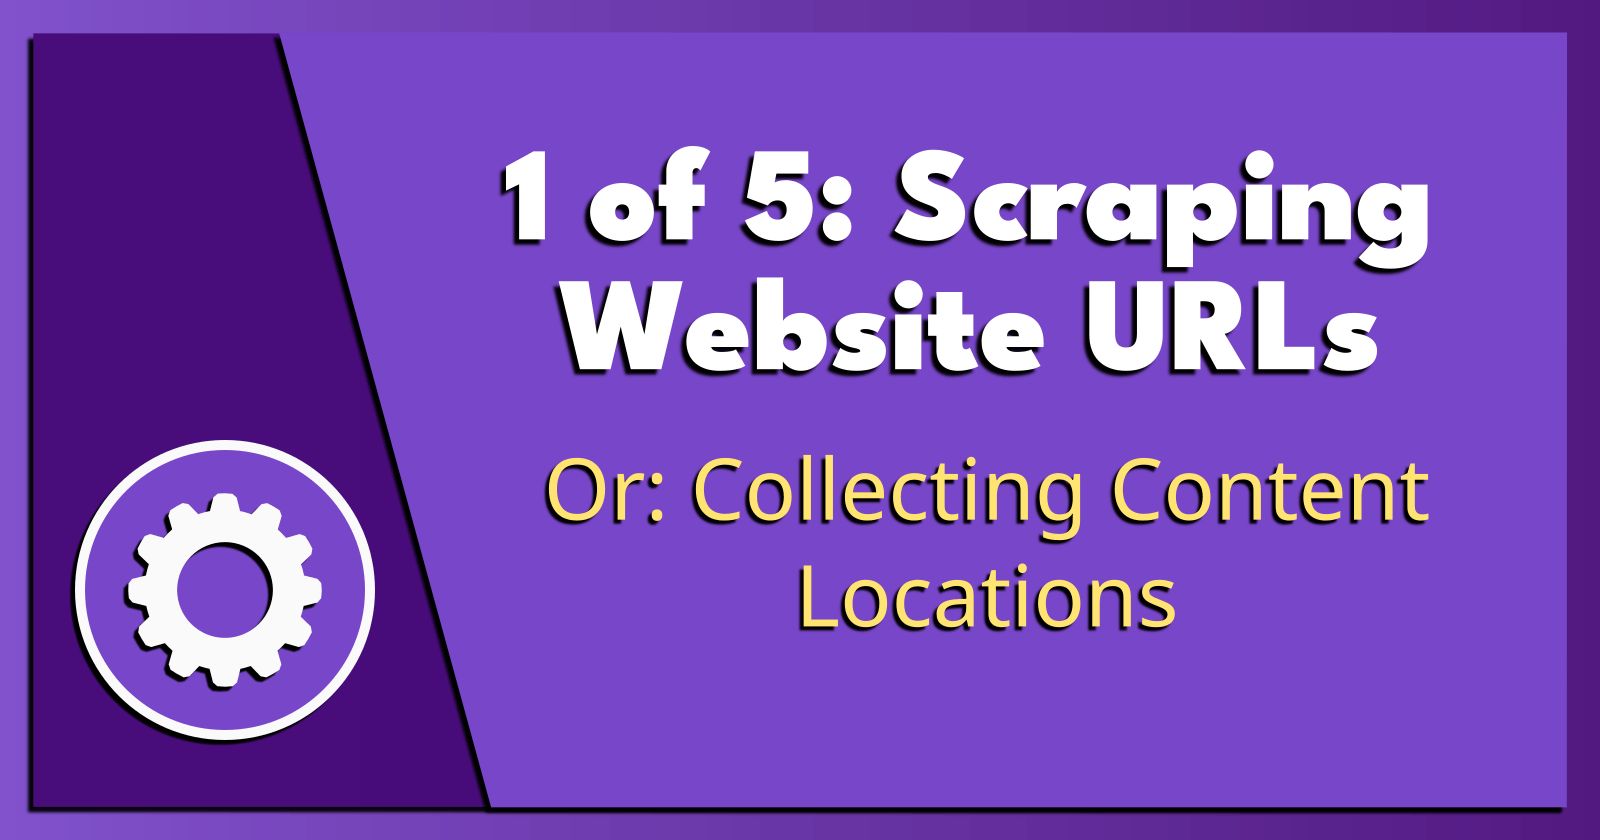 1 of 5: Scraping Website URLs.